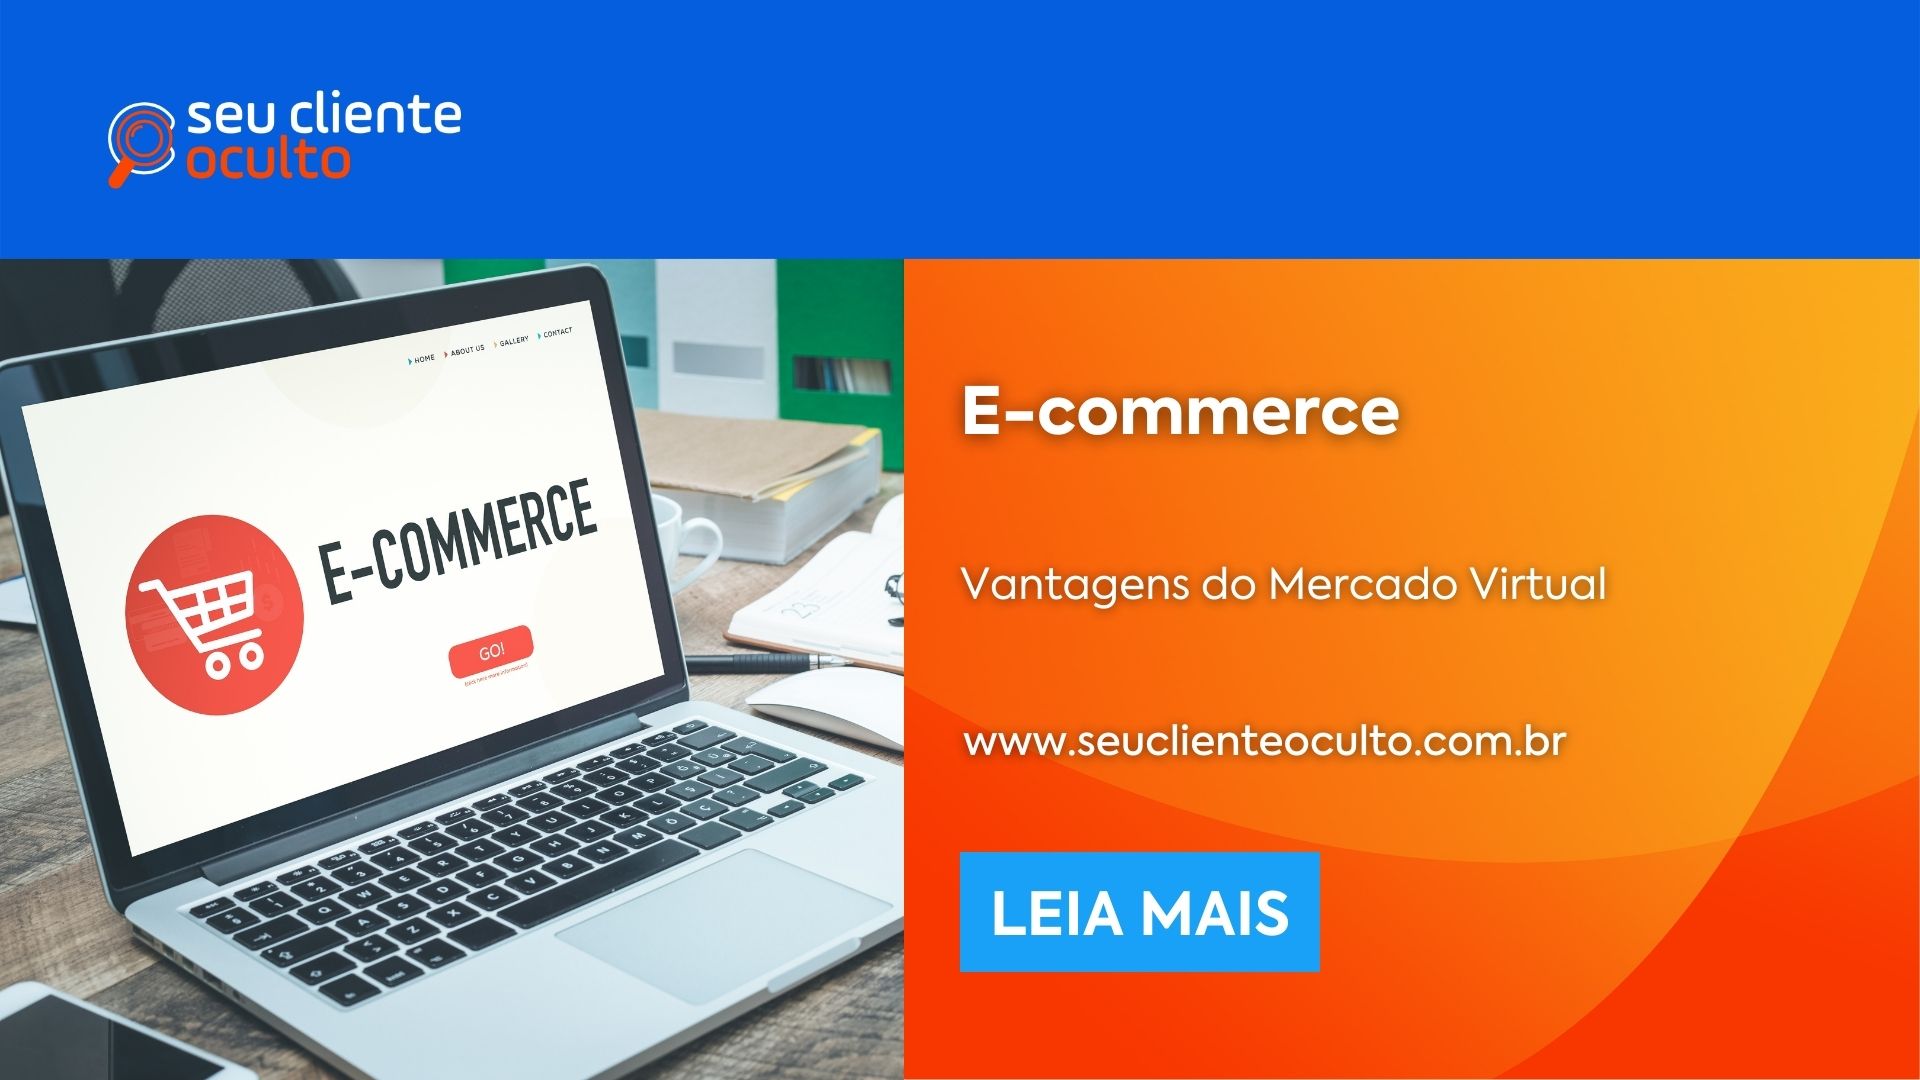 E-commerce Brasil: O Que é e Vantagens?